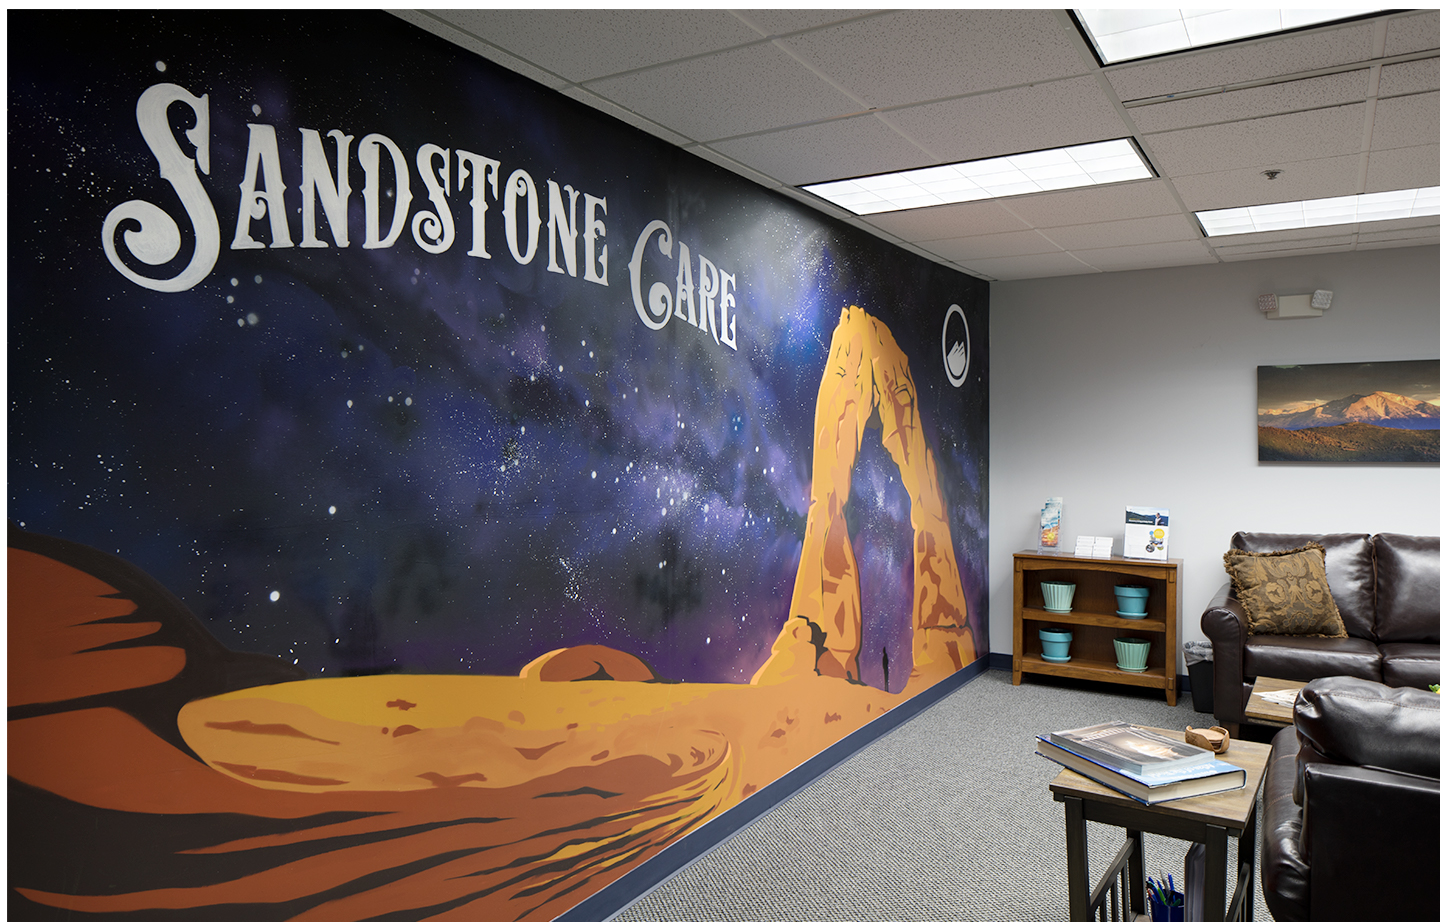 Sandstone Care - Boulder Outpatient